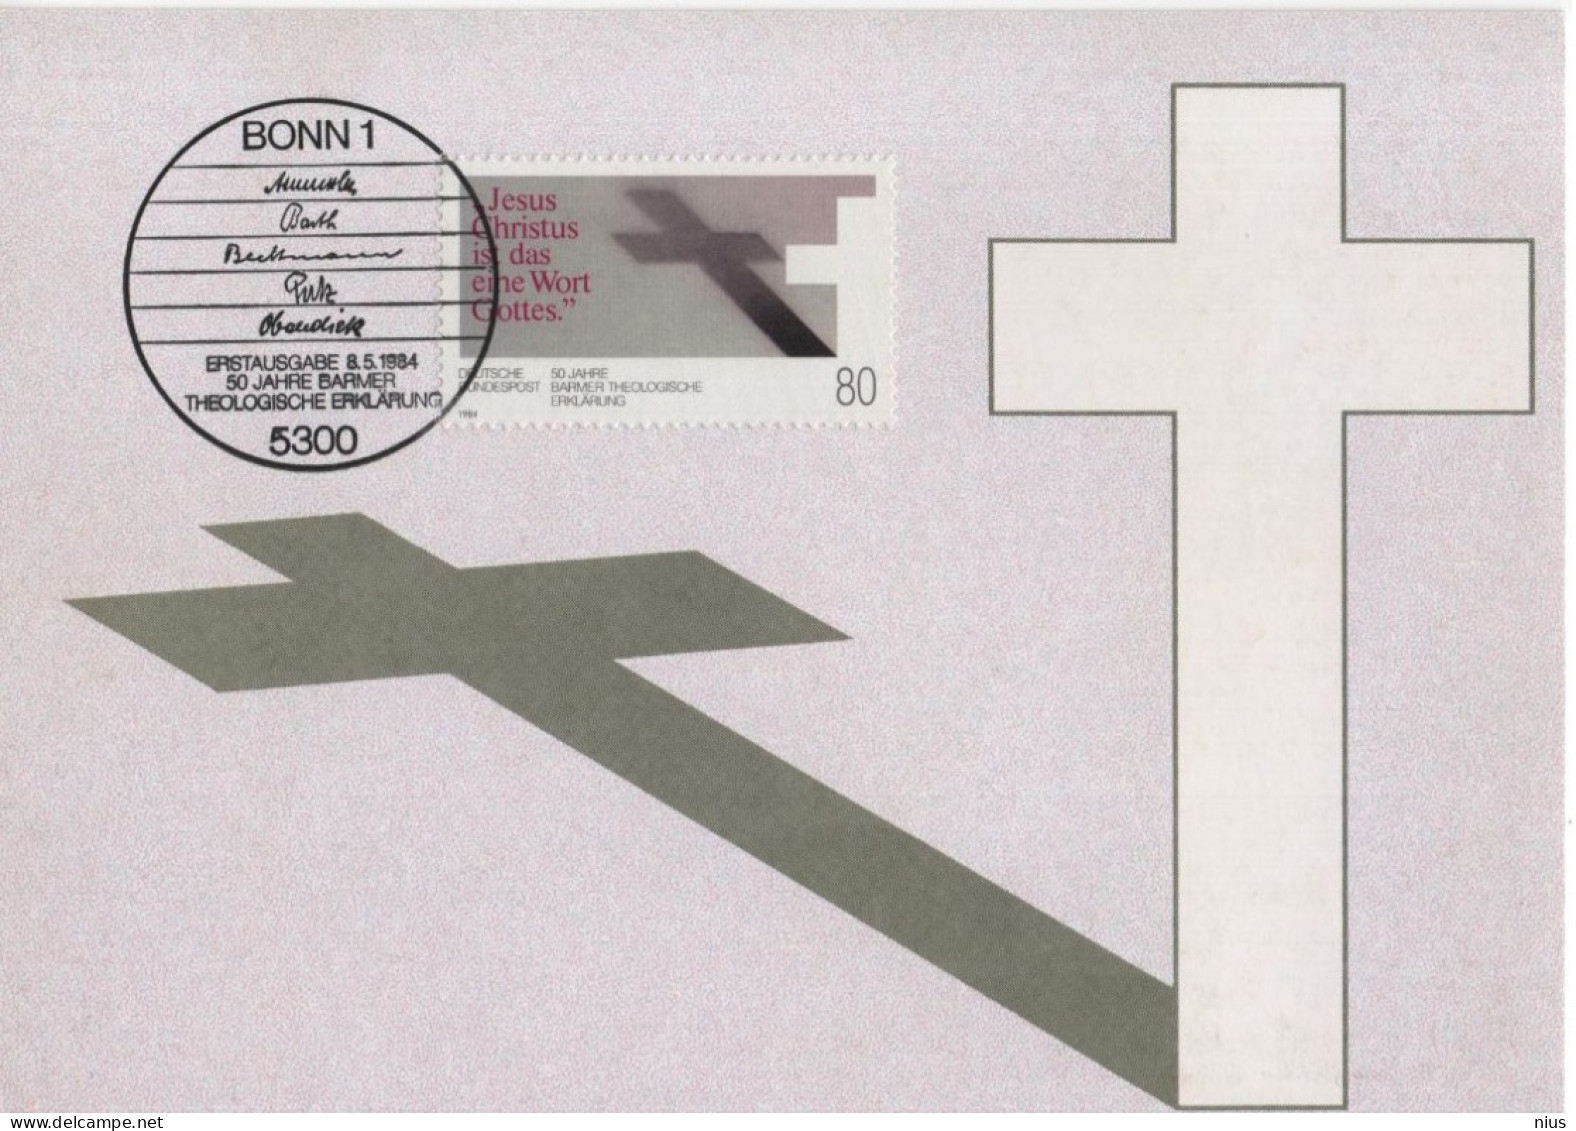 Germany Deutschland 1984 Maximum Card, 50 Jahre Barmer Theologische Erklärung, Canceled In Bonn - 1981-2000